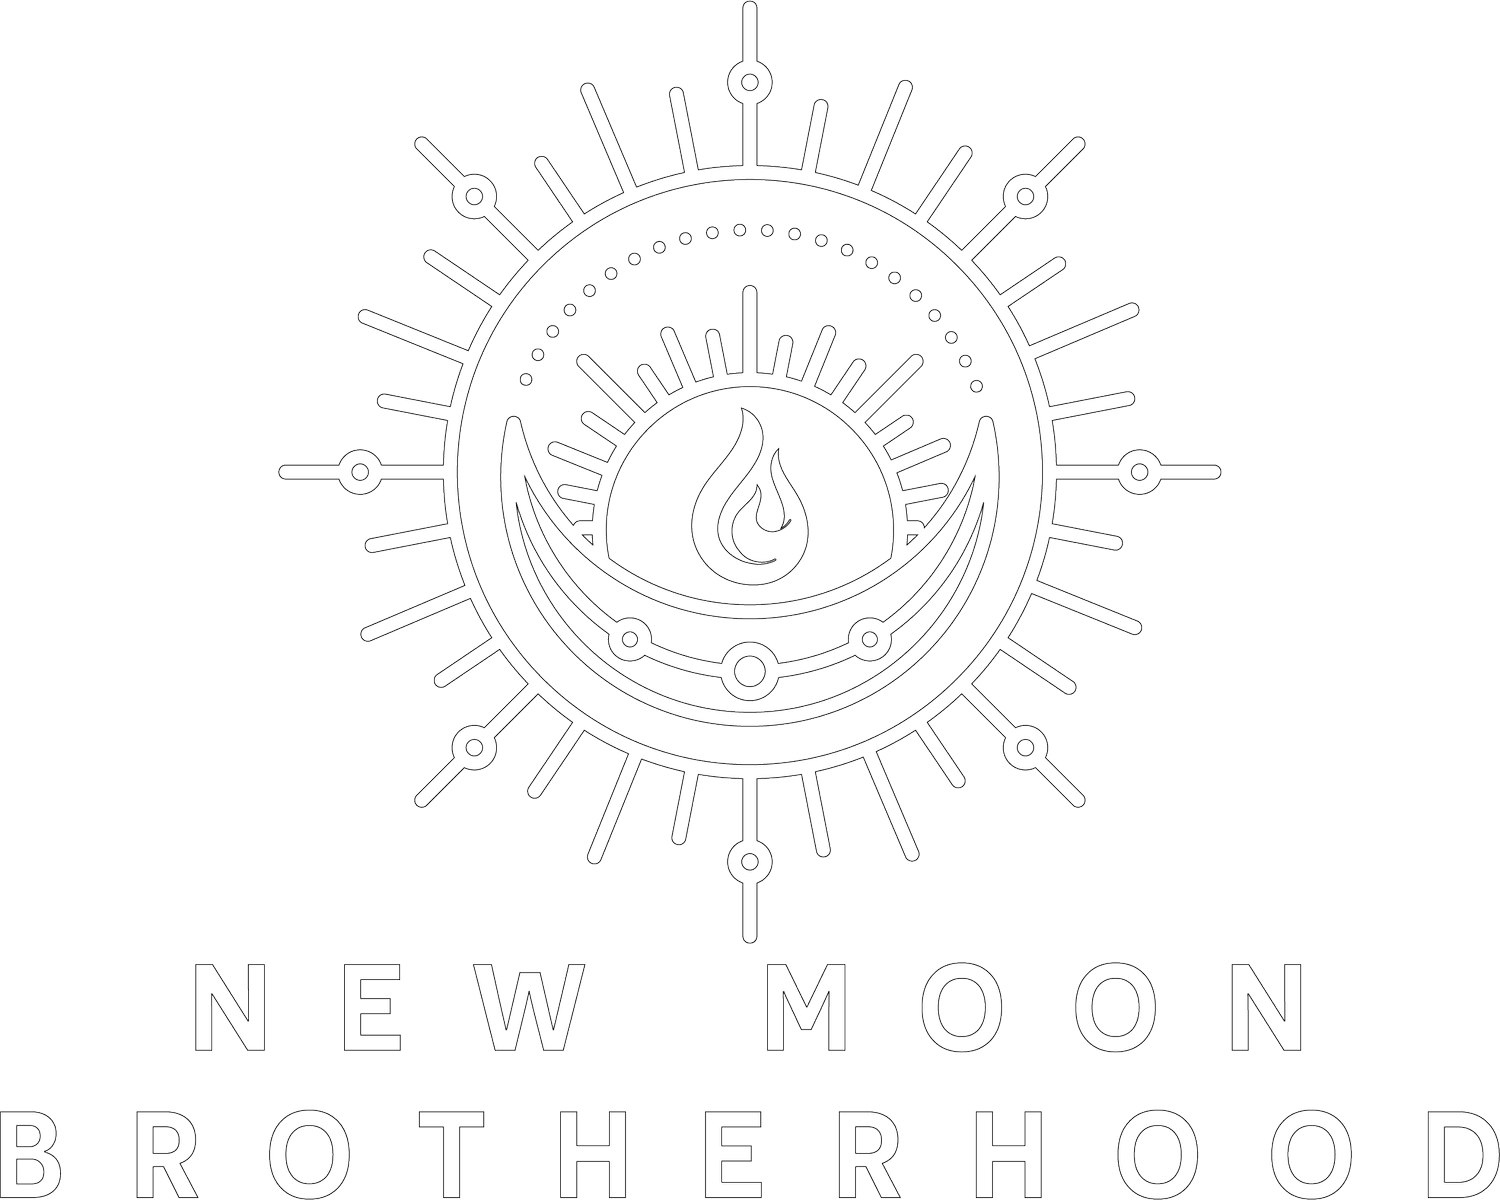 New Moon Brotherhood